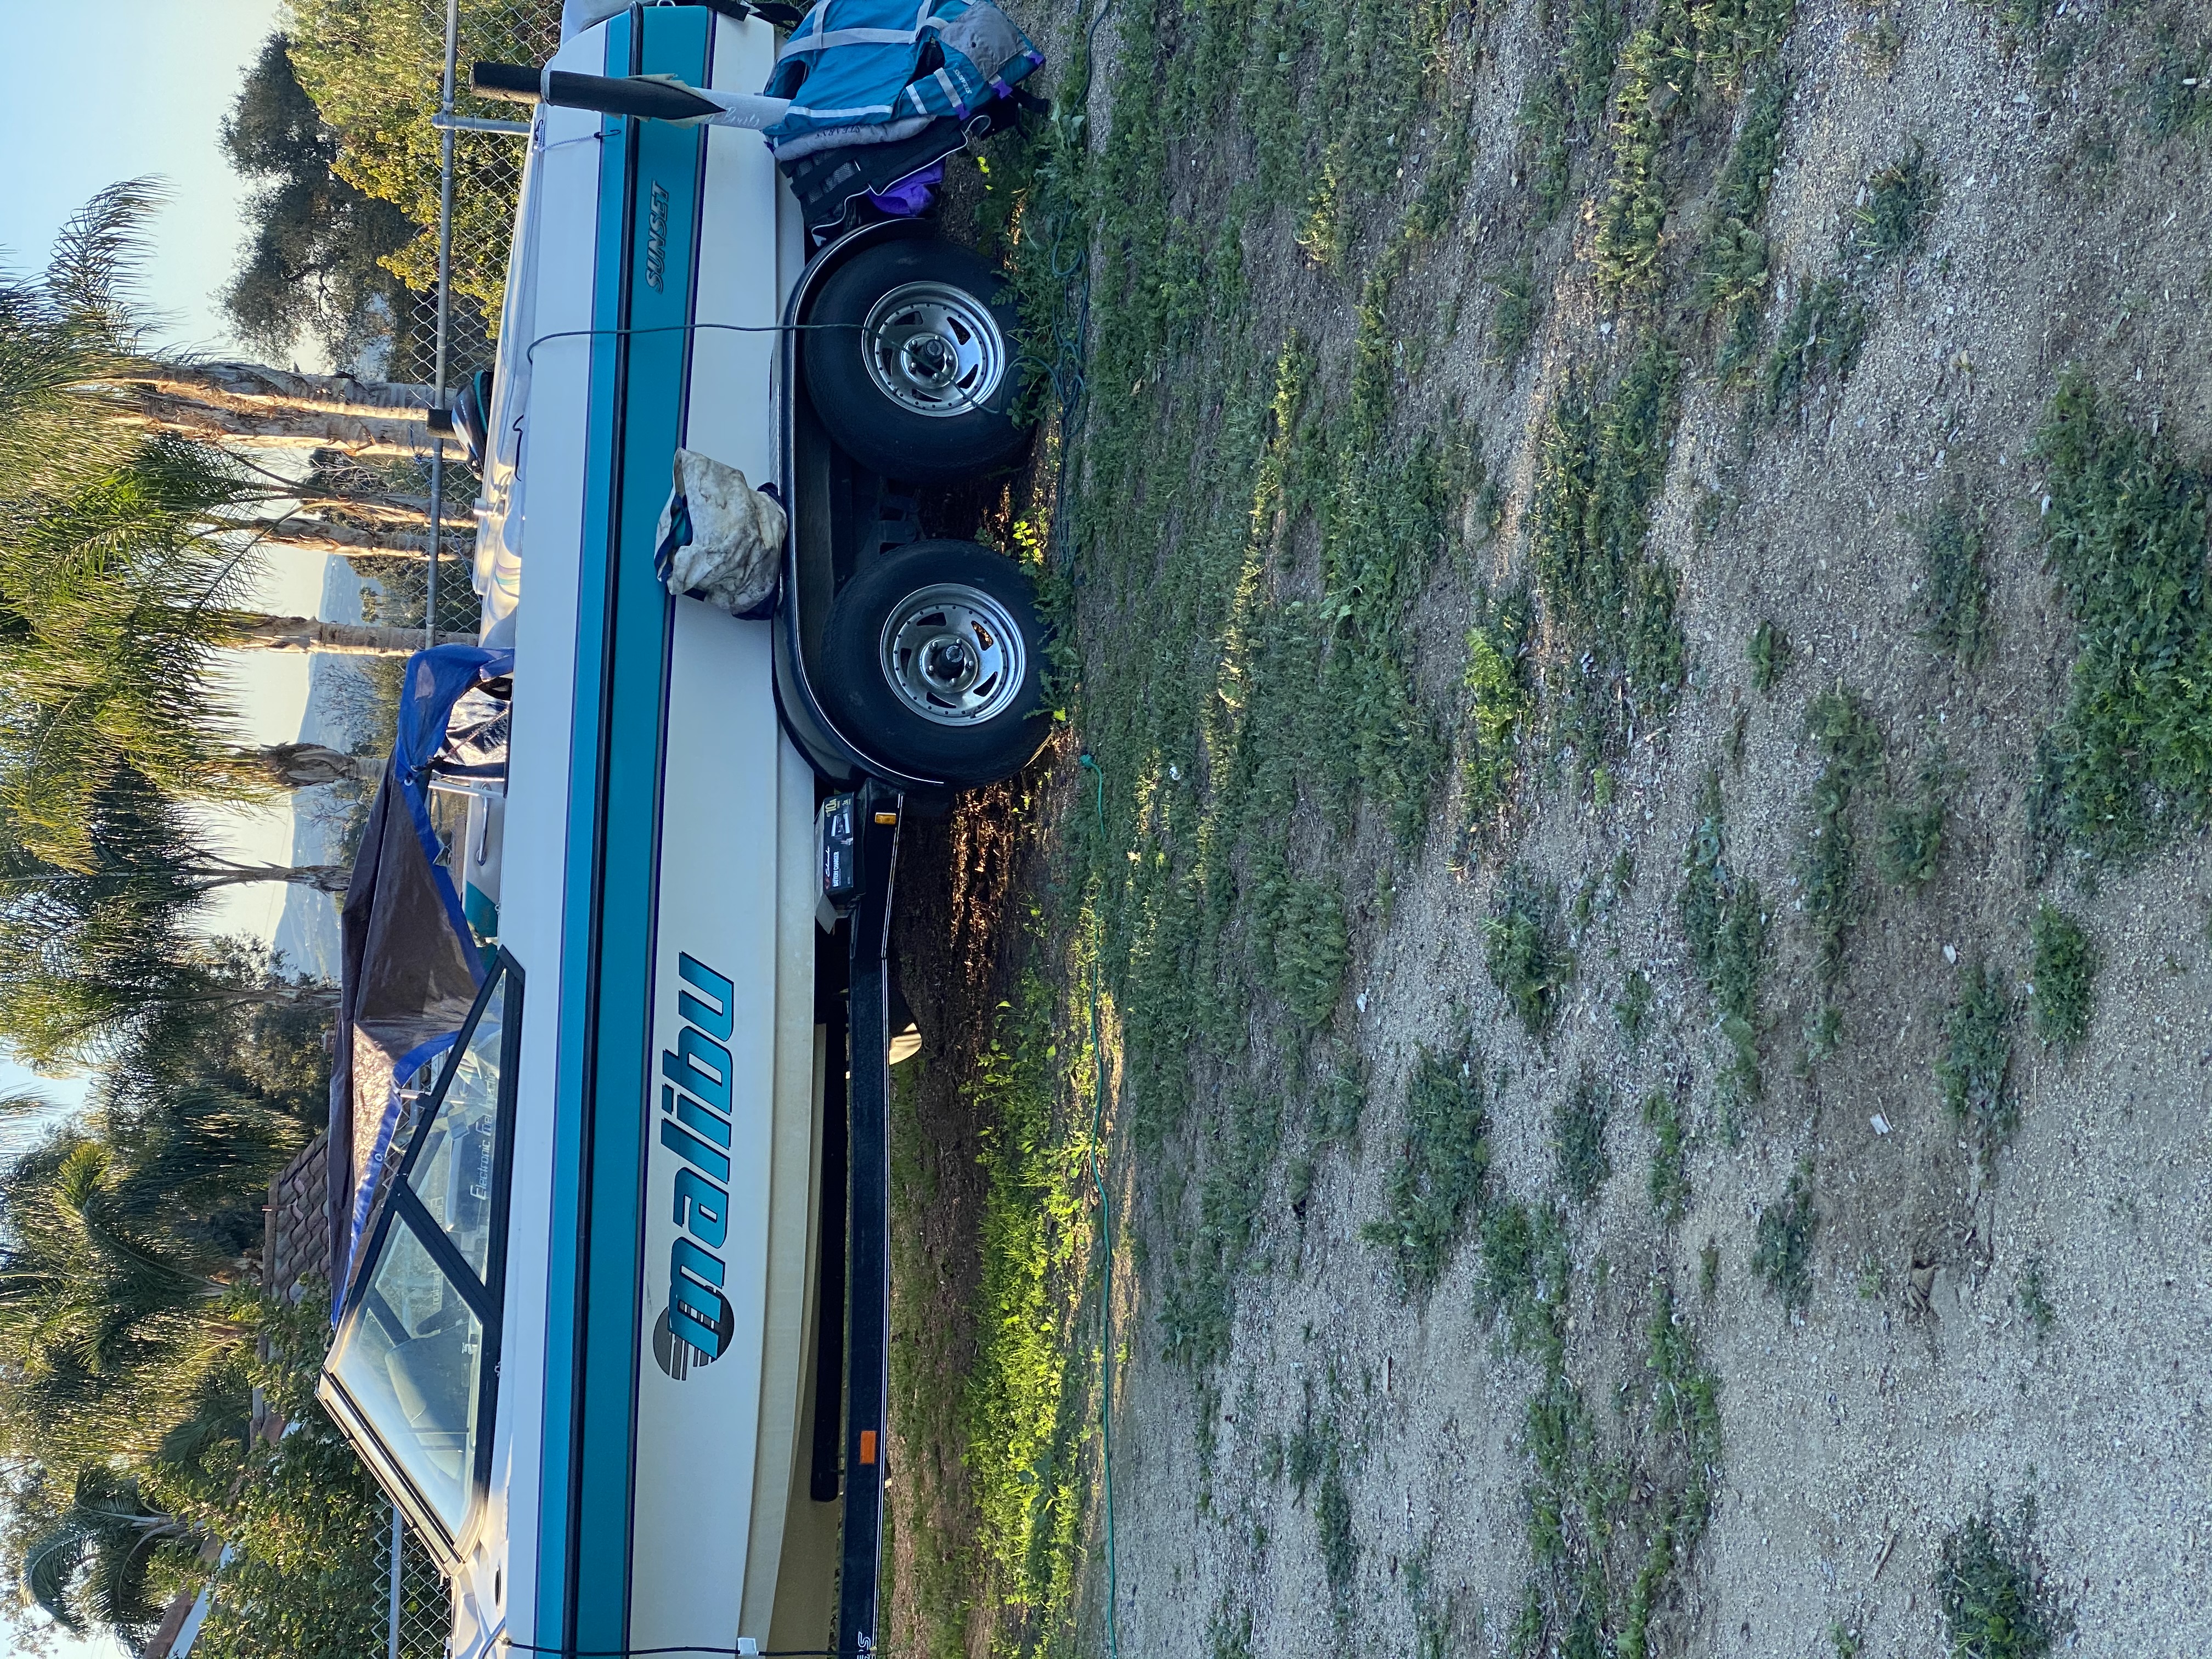 1997 21 foot MALIBU vlx Ski Boat for sale in Fallbrook, CA - image 11 